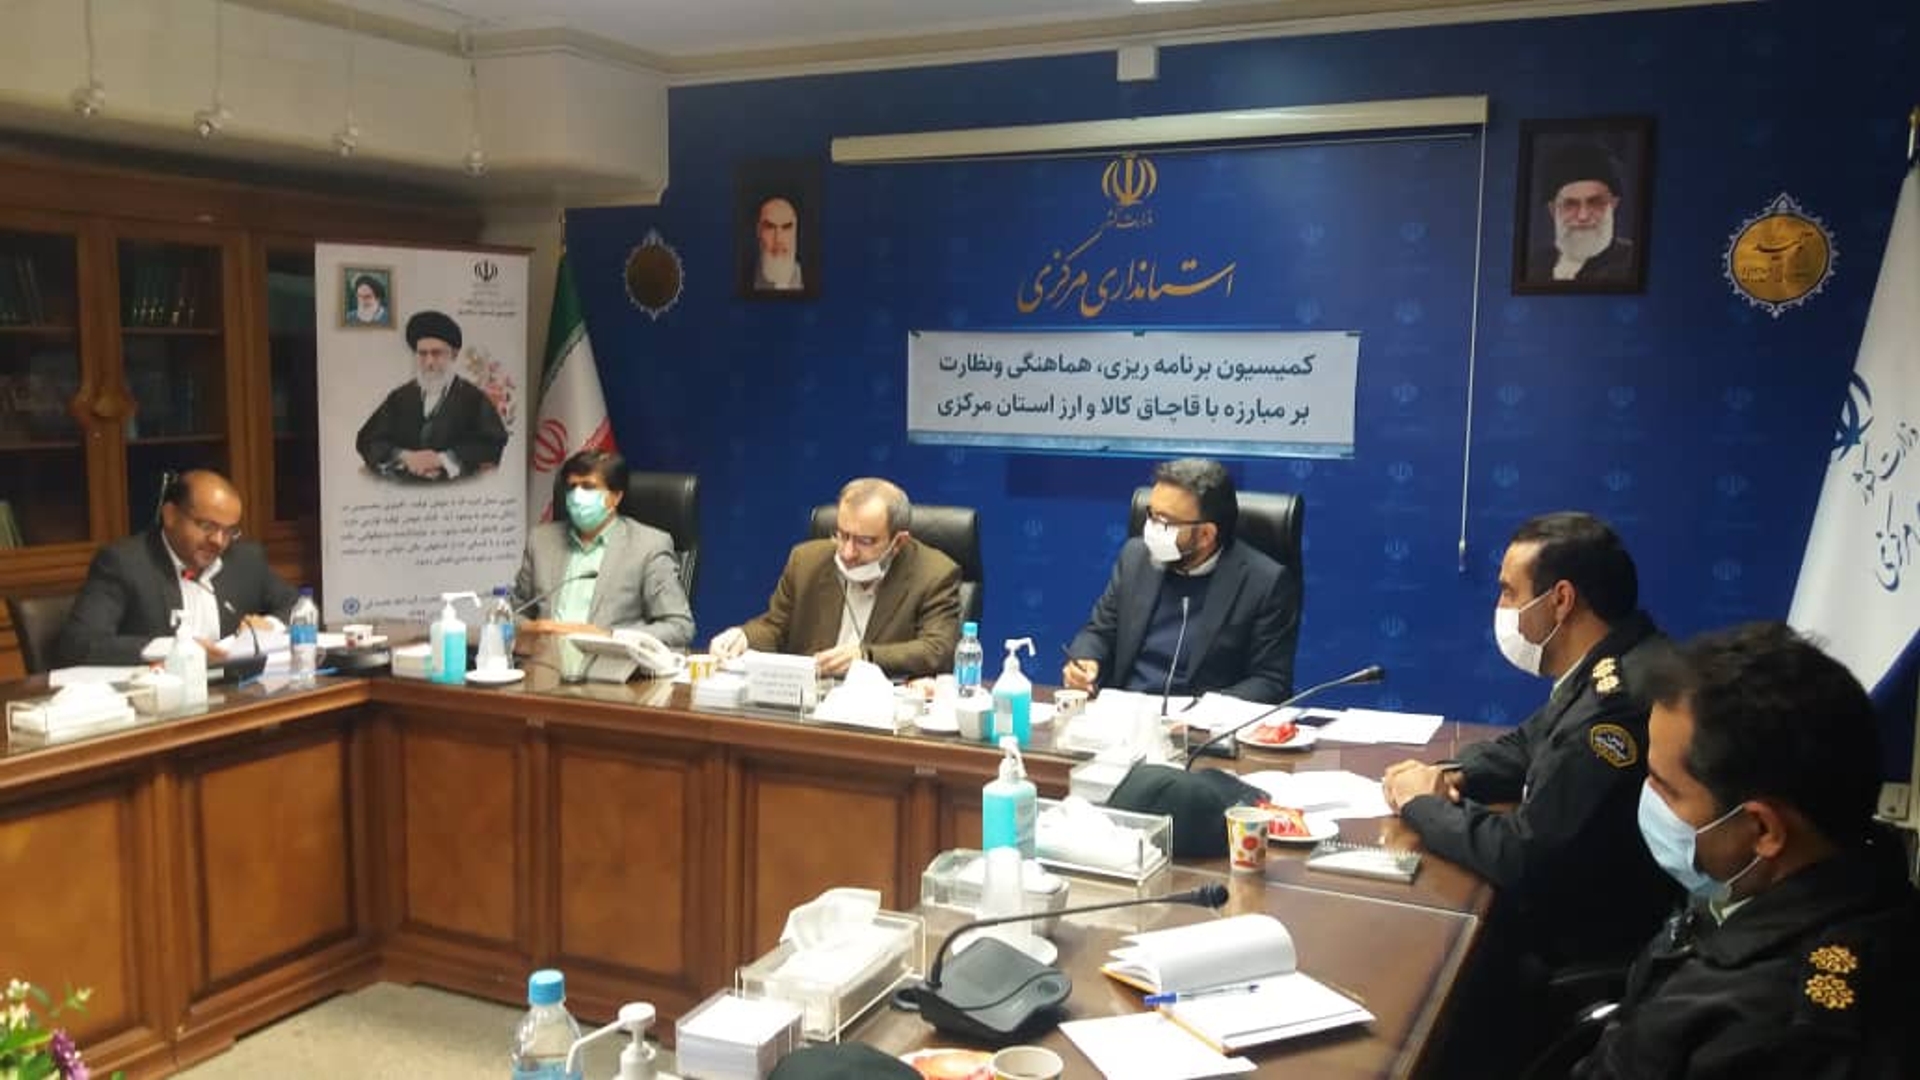 کمیسیون مبارزه با قاچاق کالا و ارز استان به ریاست دکتر مخلص الائمه ، استاندار مرکزی و رئیس کمیسیون تشکیل جلسه داد